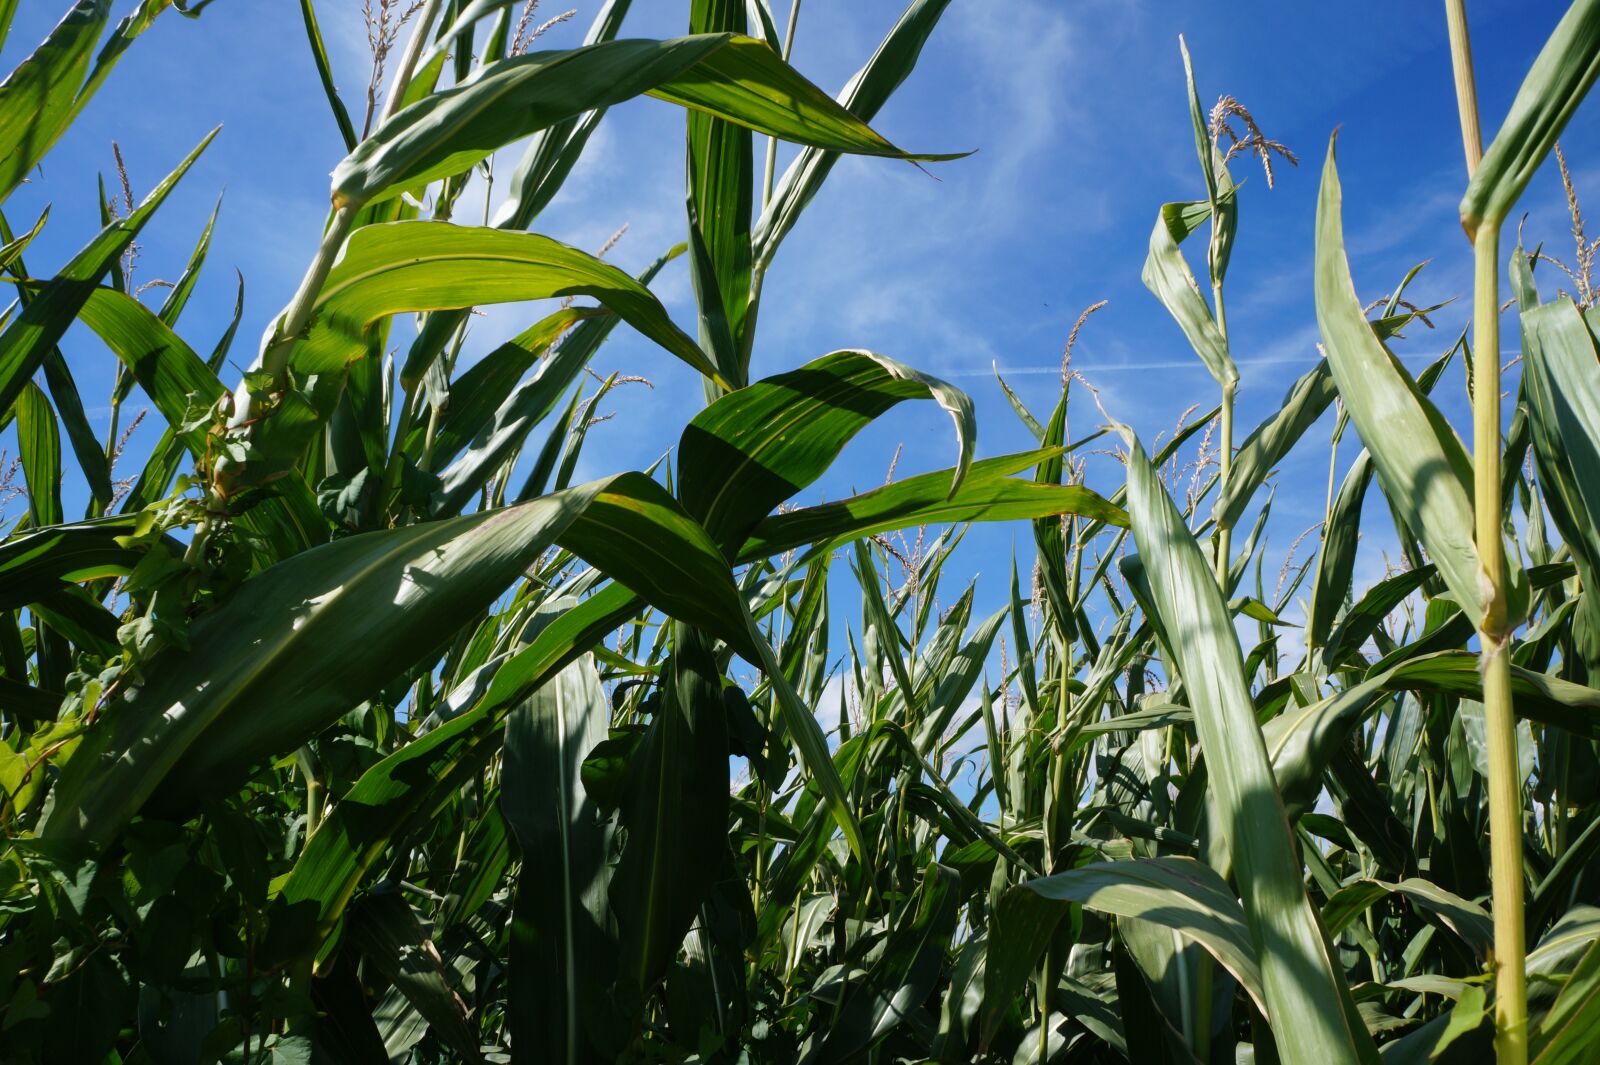 Sony Alpha a3000 sample photo. Corn, agriculture, harvest photography